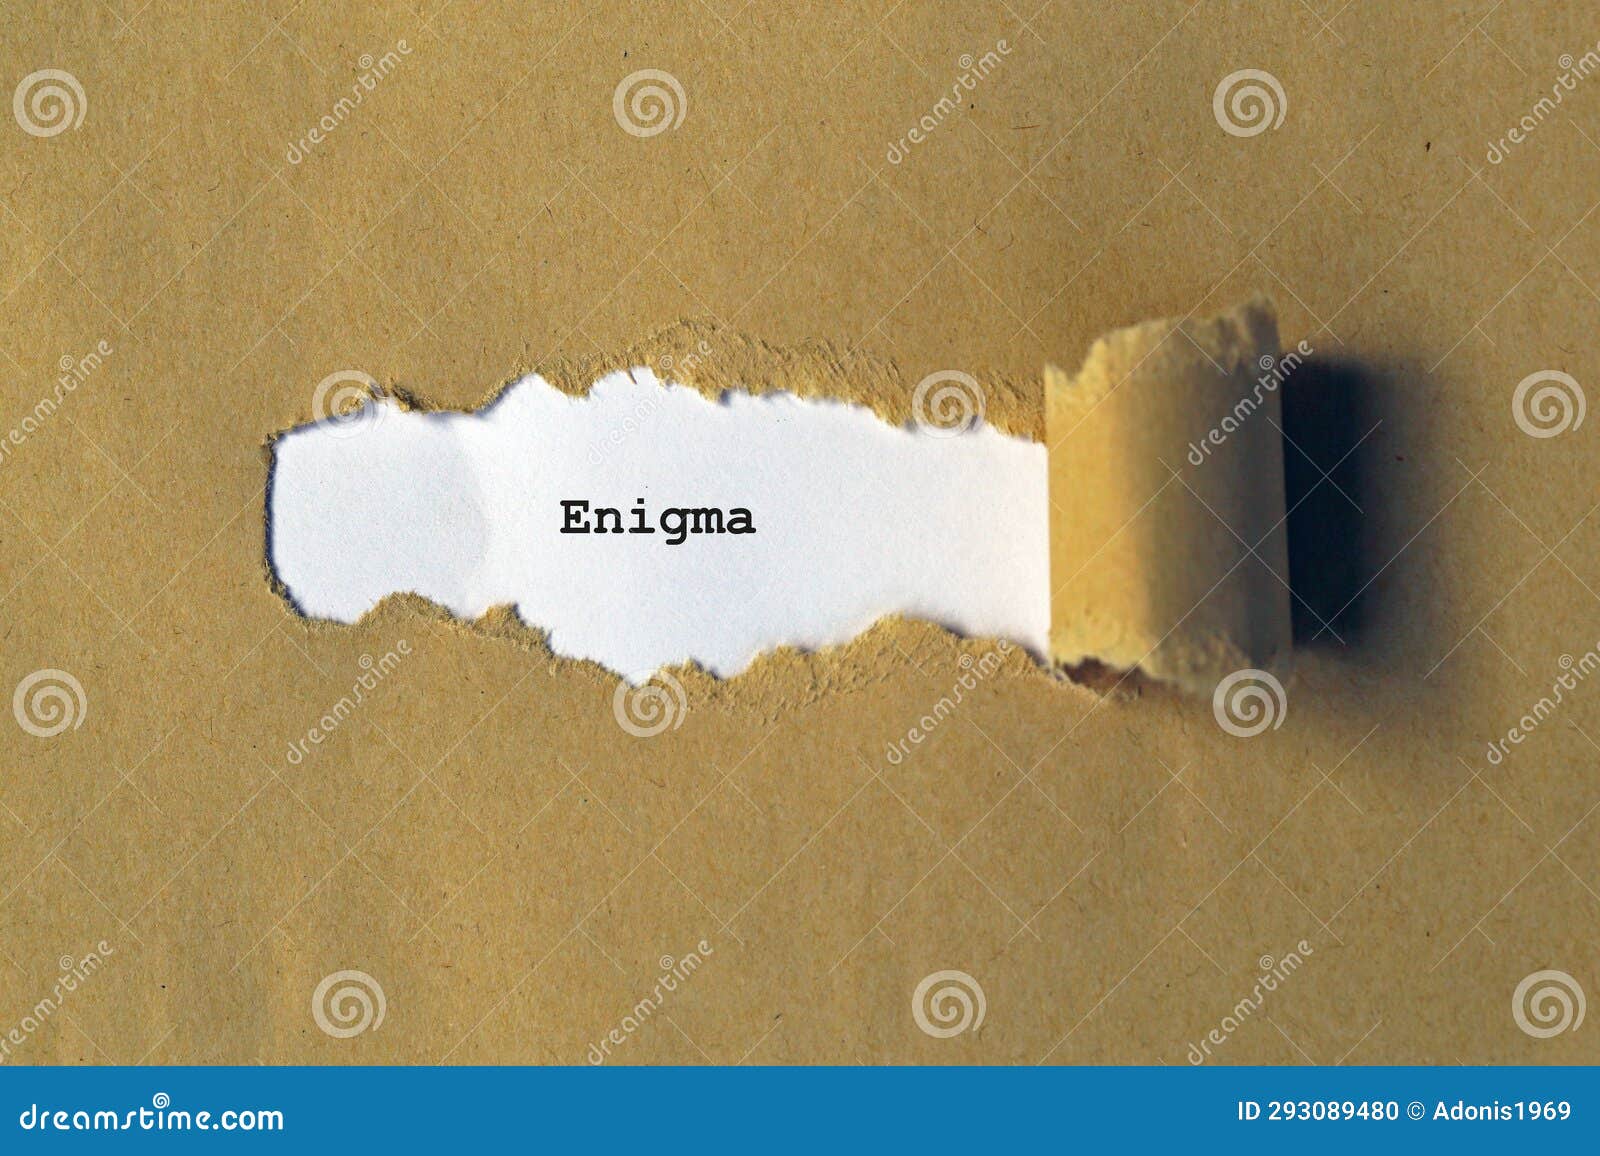 enigma on white paper